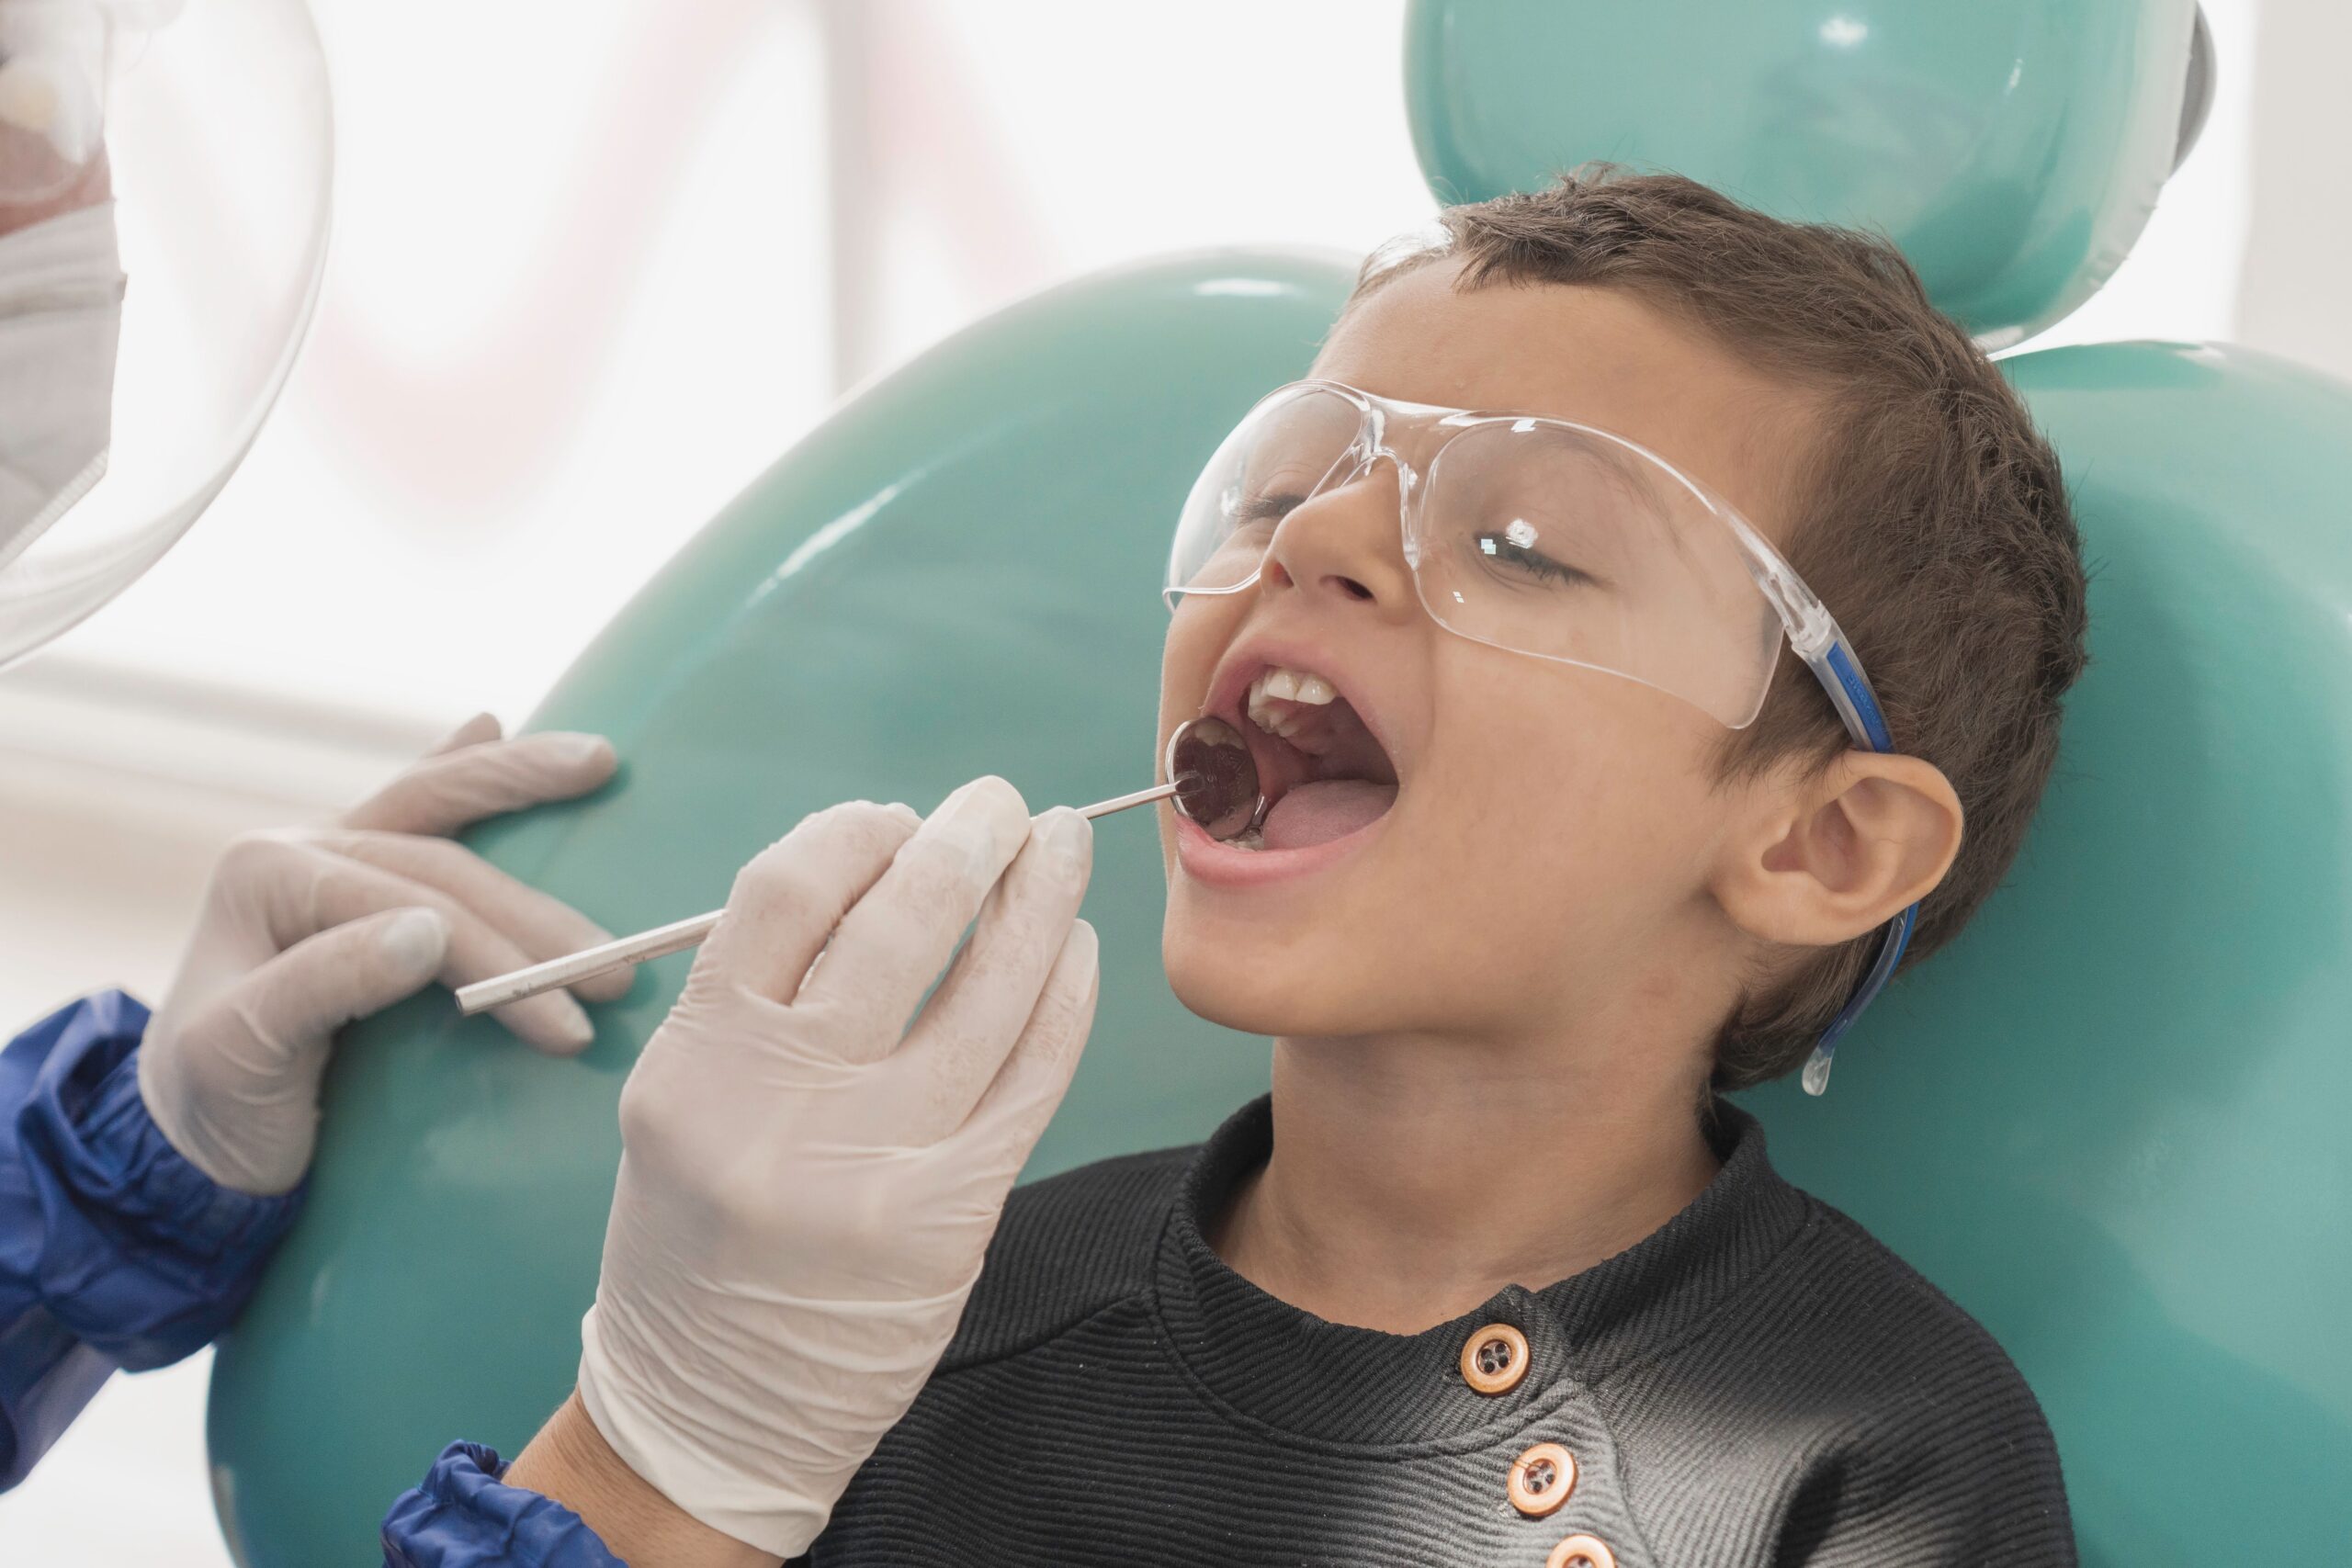 Pediatric Dentist vs. Family Dentist: Does it Matter Where I Take My Child?